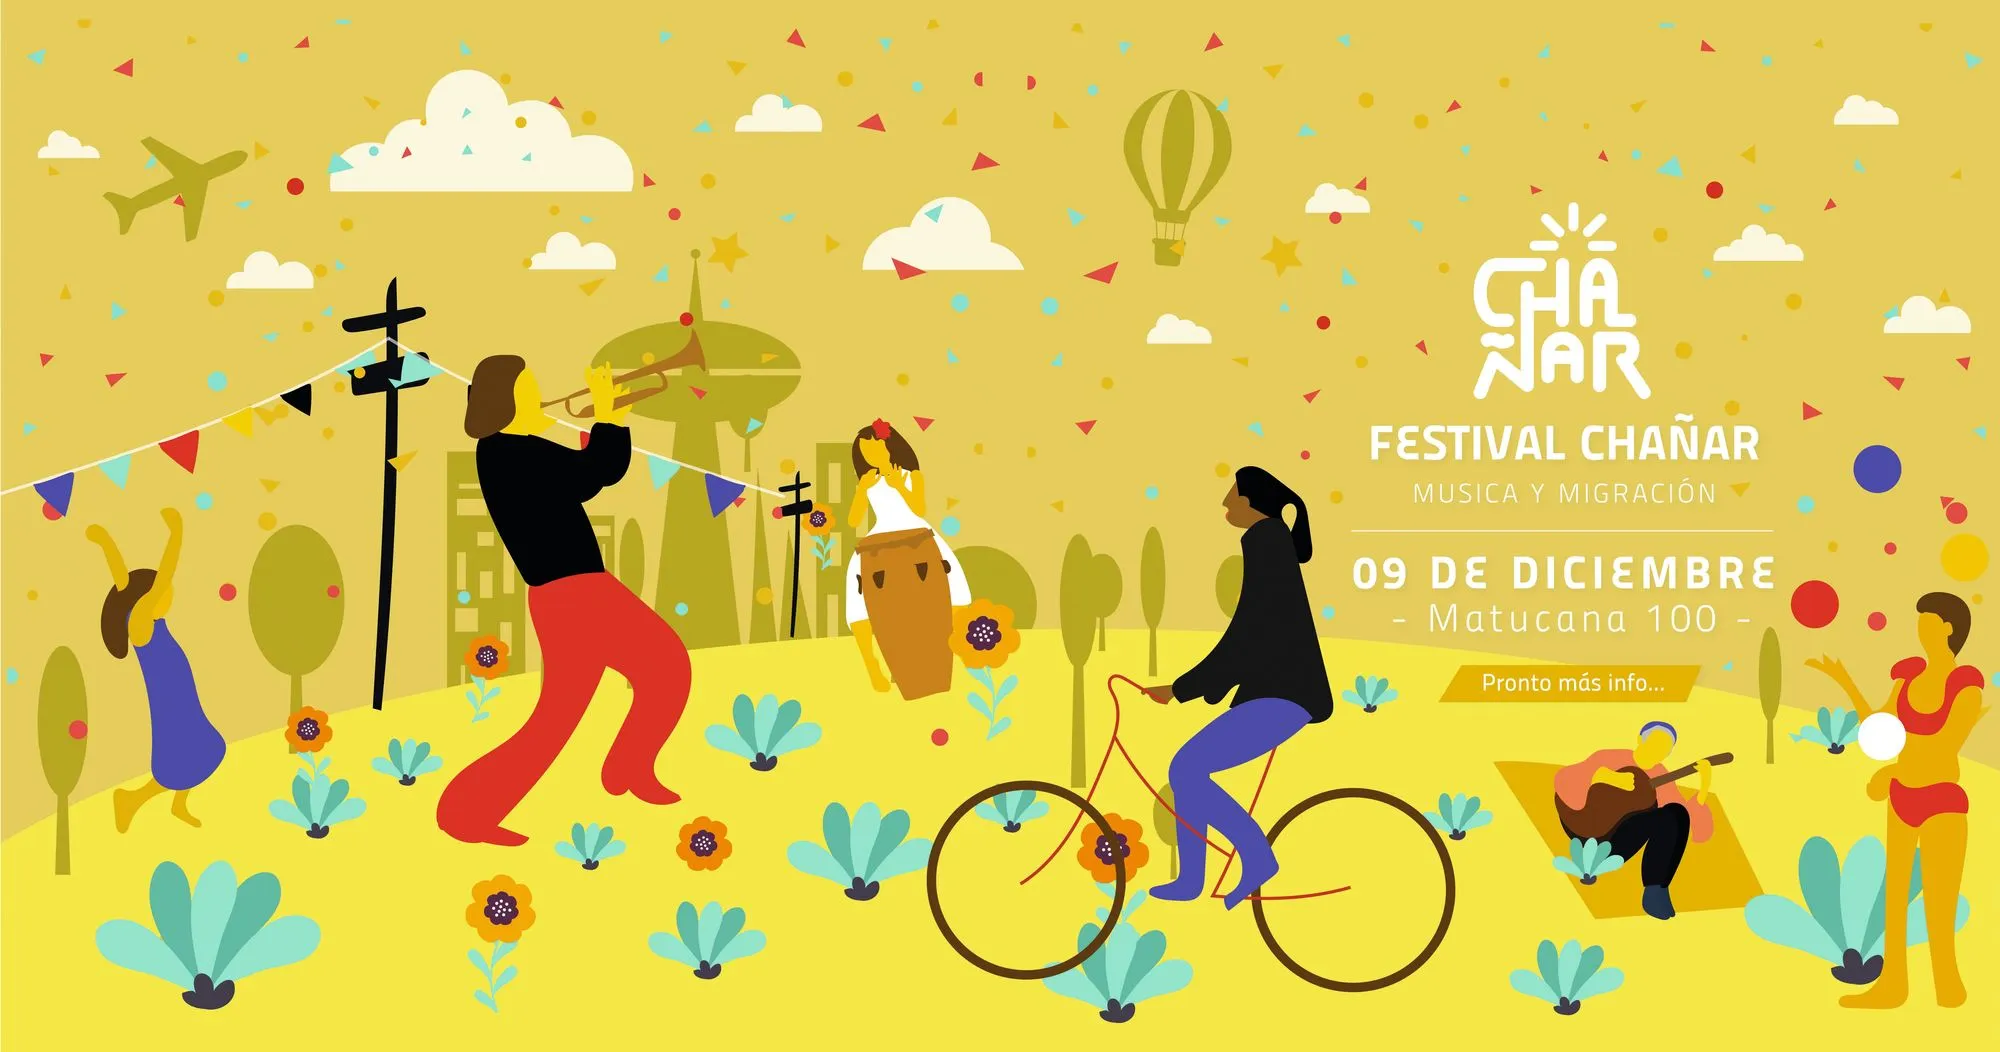 Cartel para el Festival Chañar música y migración, Chile, 2018.